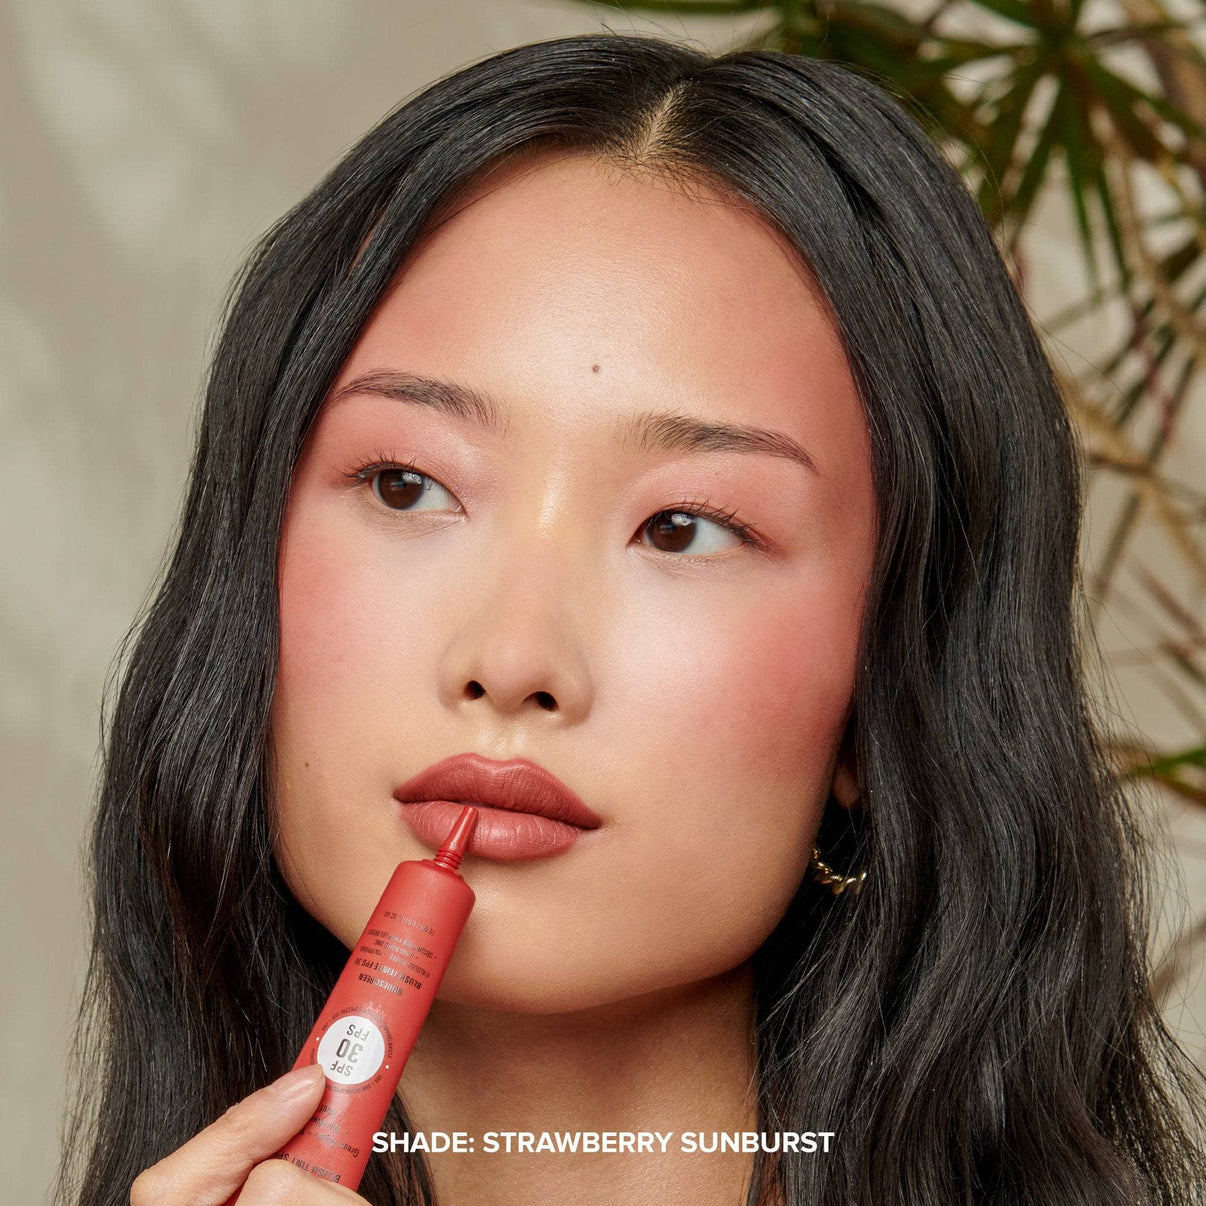 Model applying STRAWBERRY SUNBURST on her lips